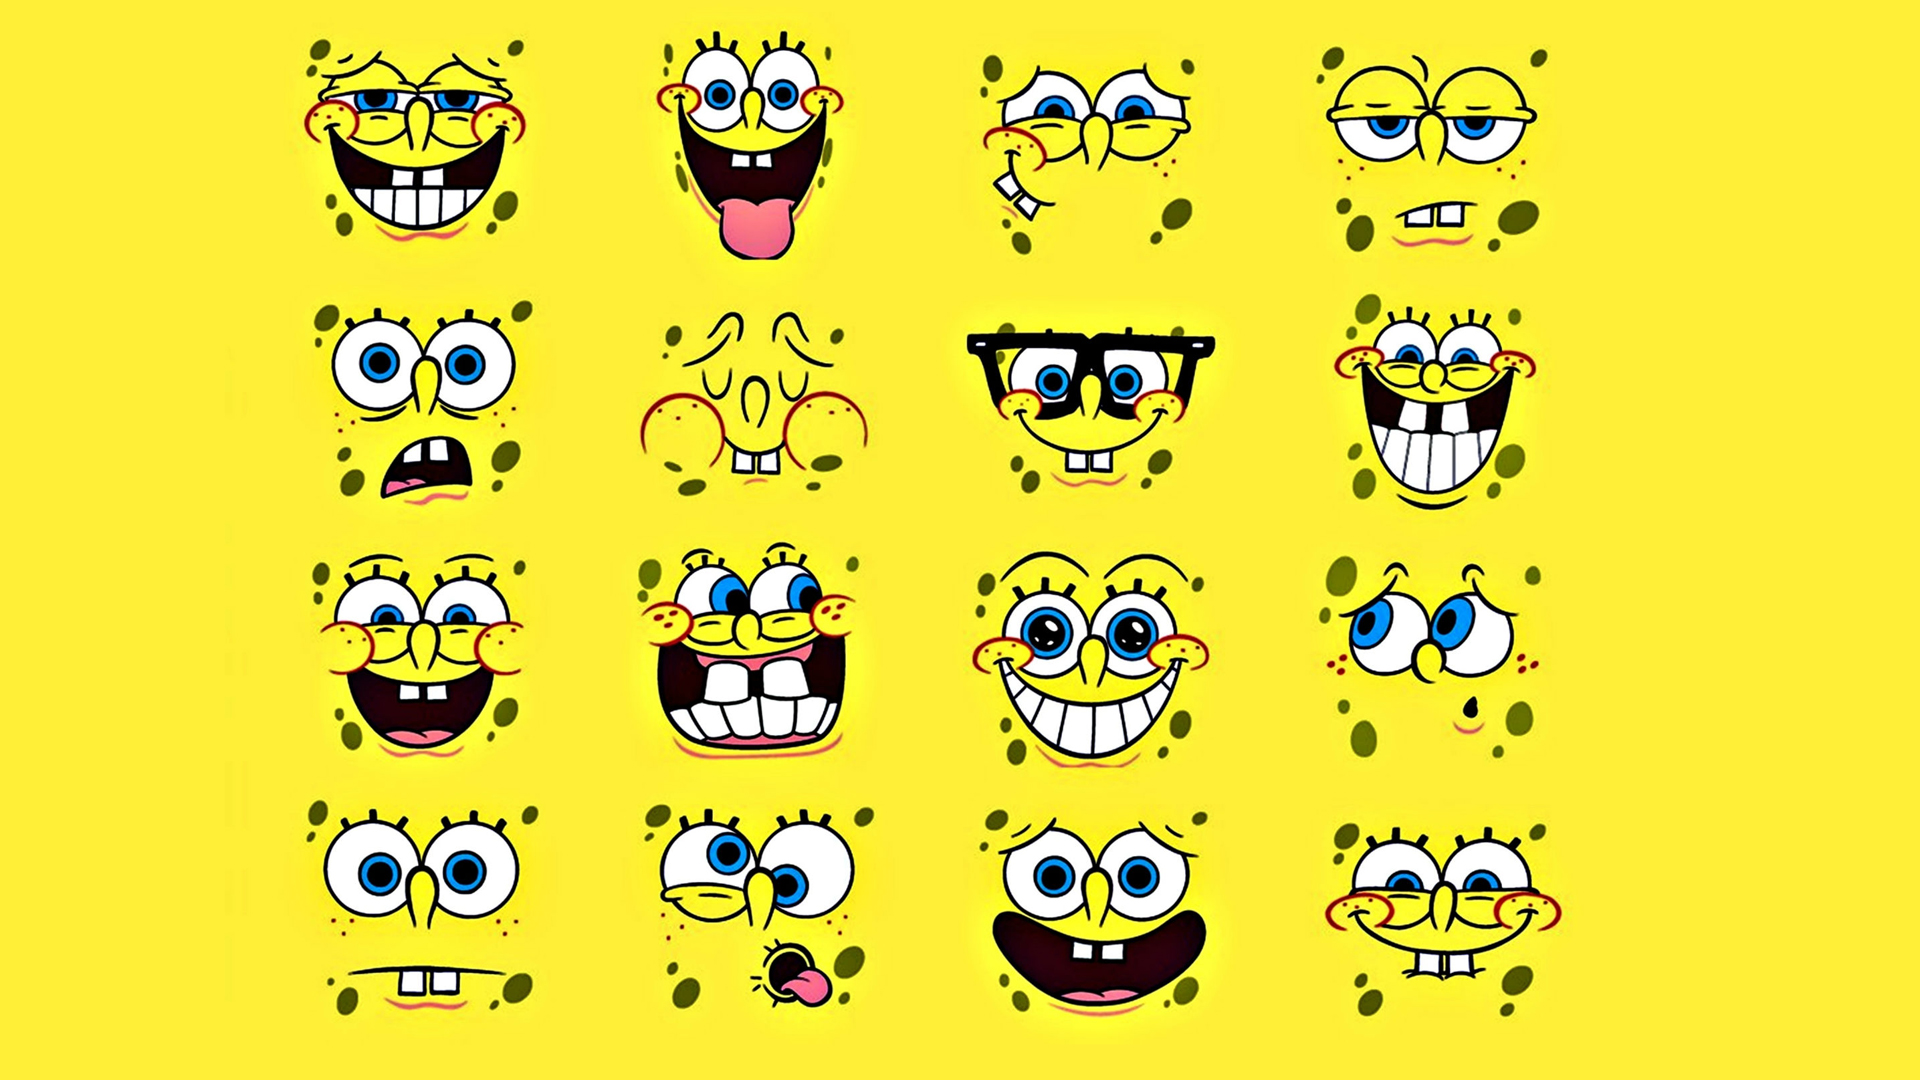 Cool Spongebob Wallpapers - Bing images